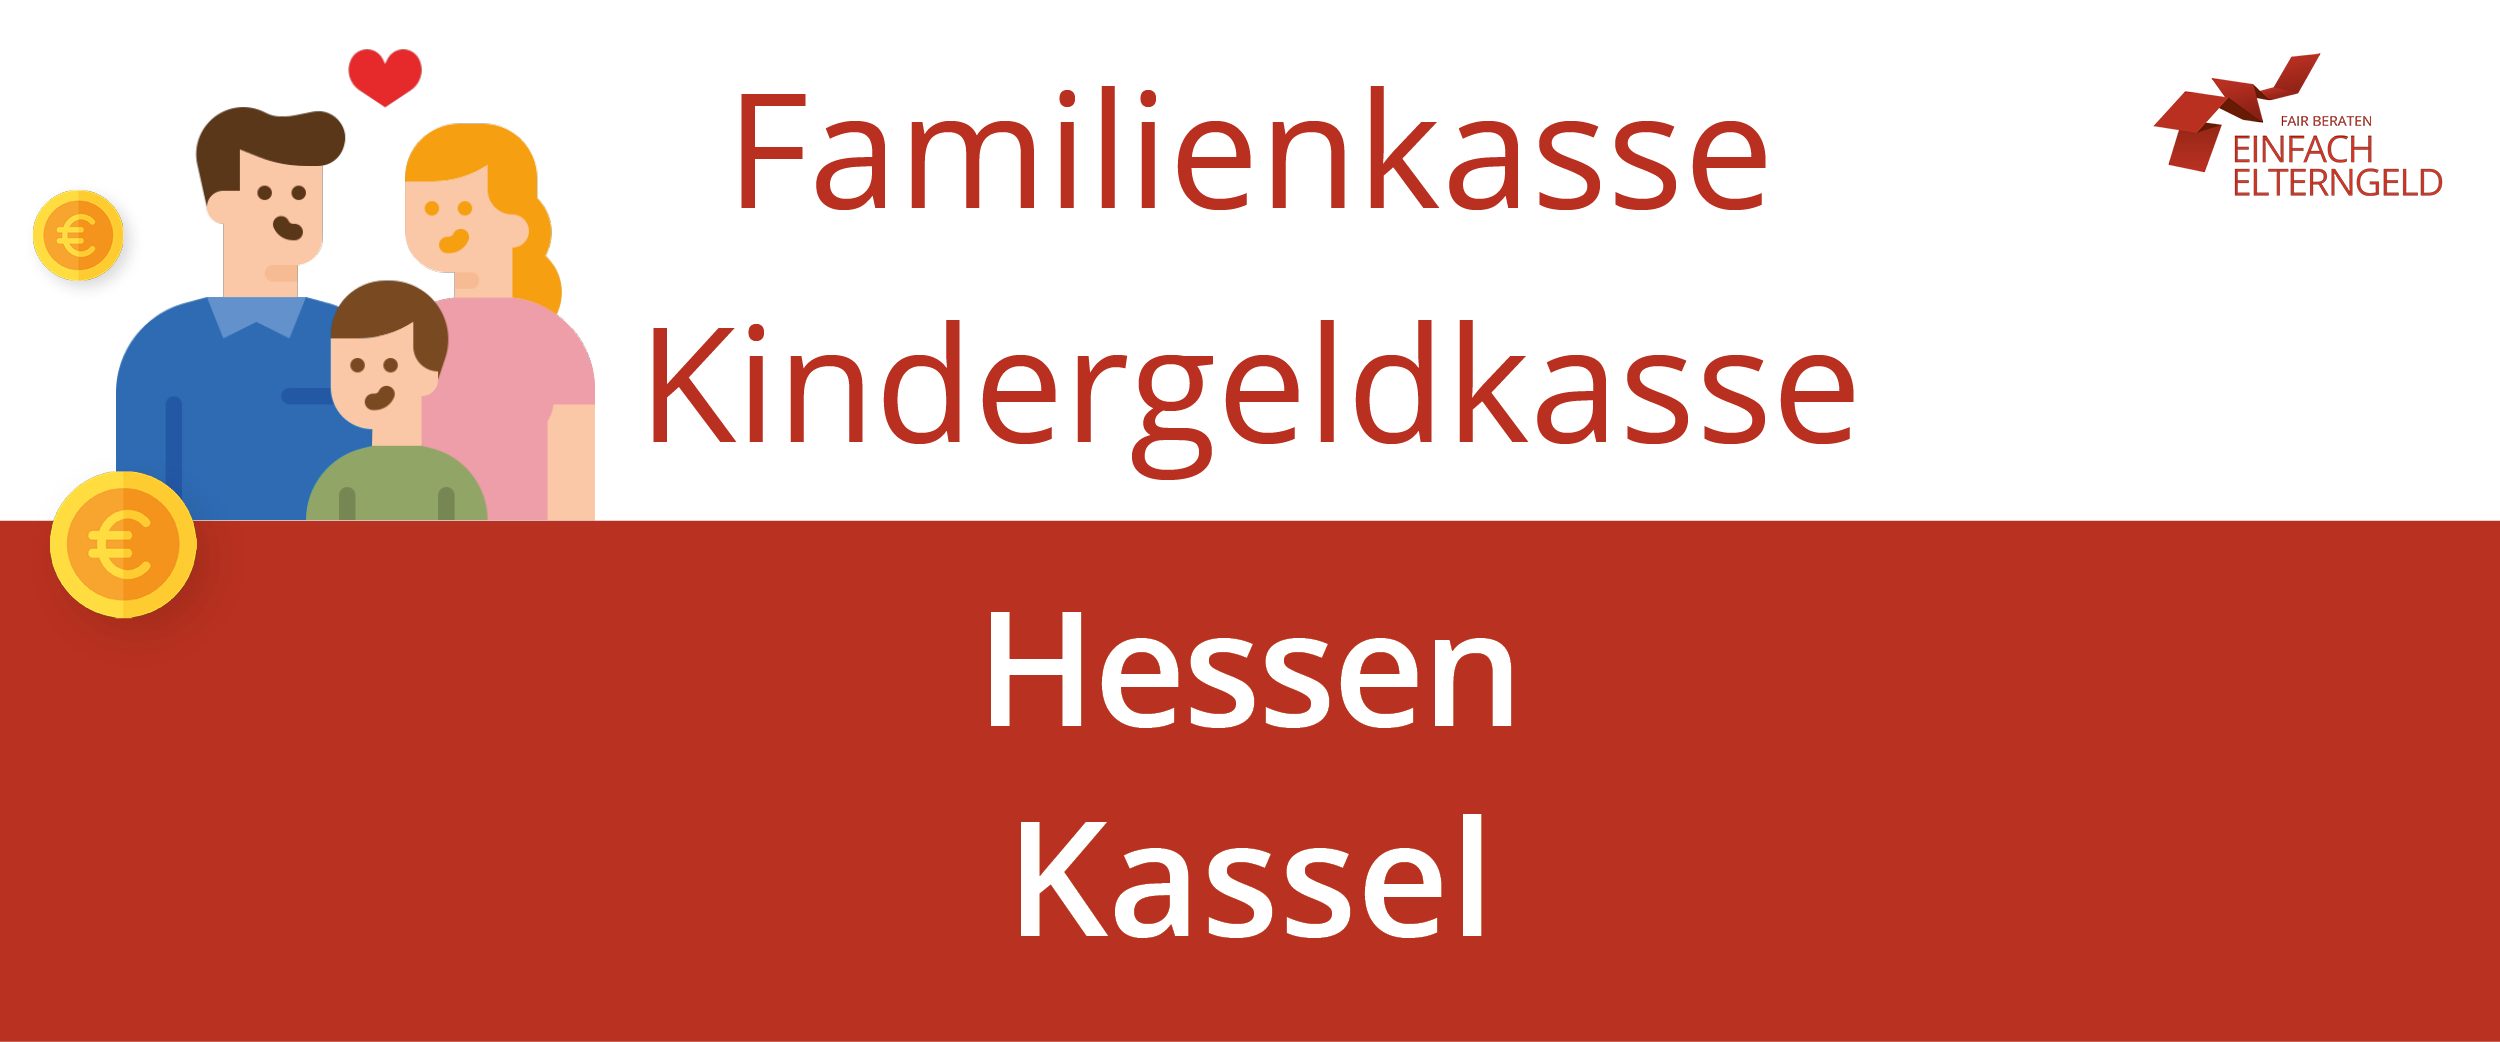 Wir stellen Ihnen die Familienkasse Kindergeldkasse Hessen Kassel vor.